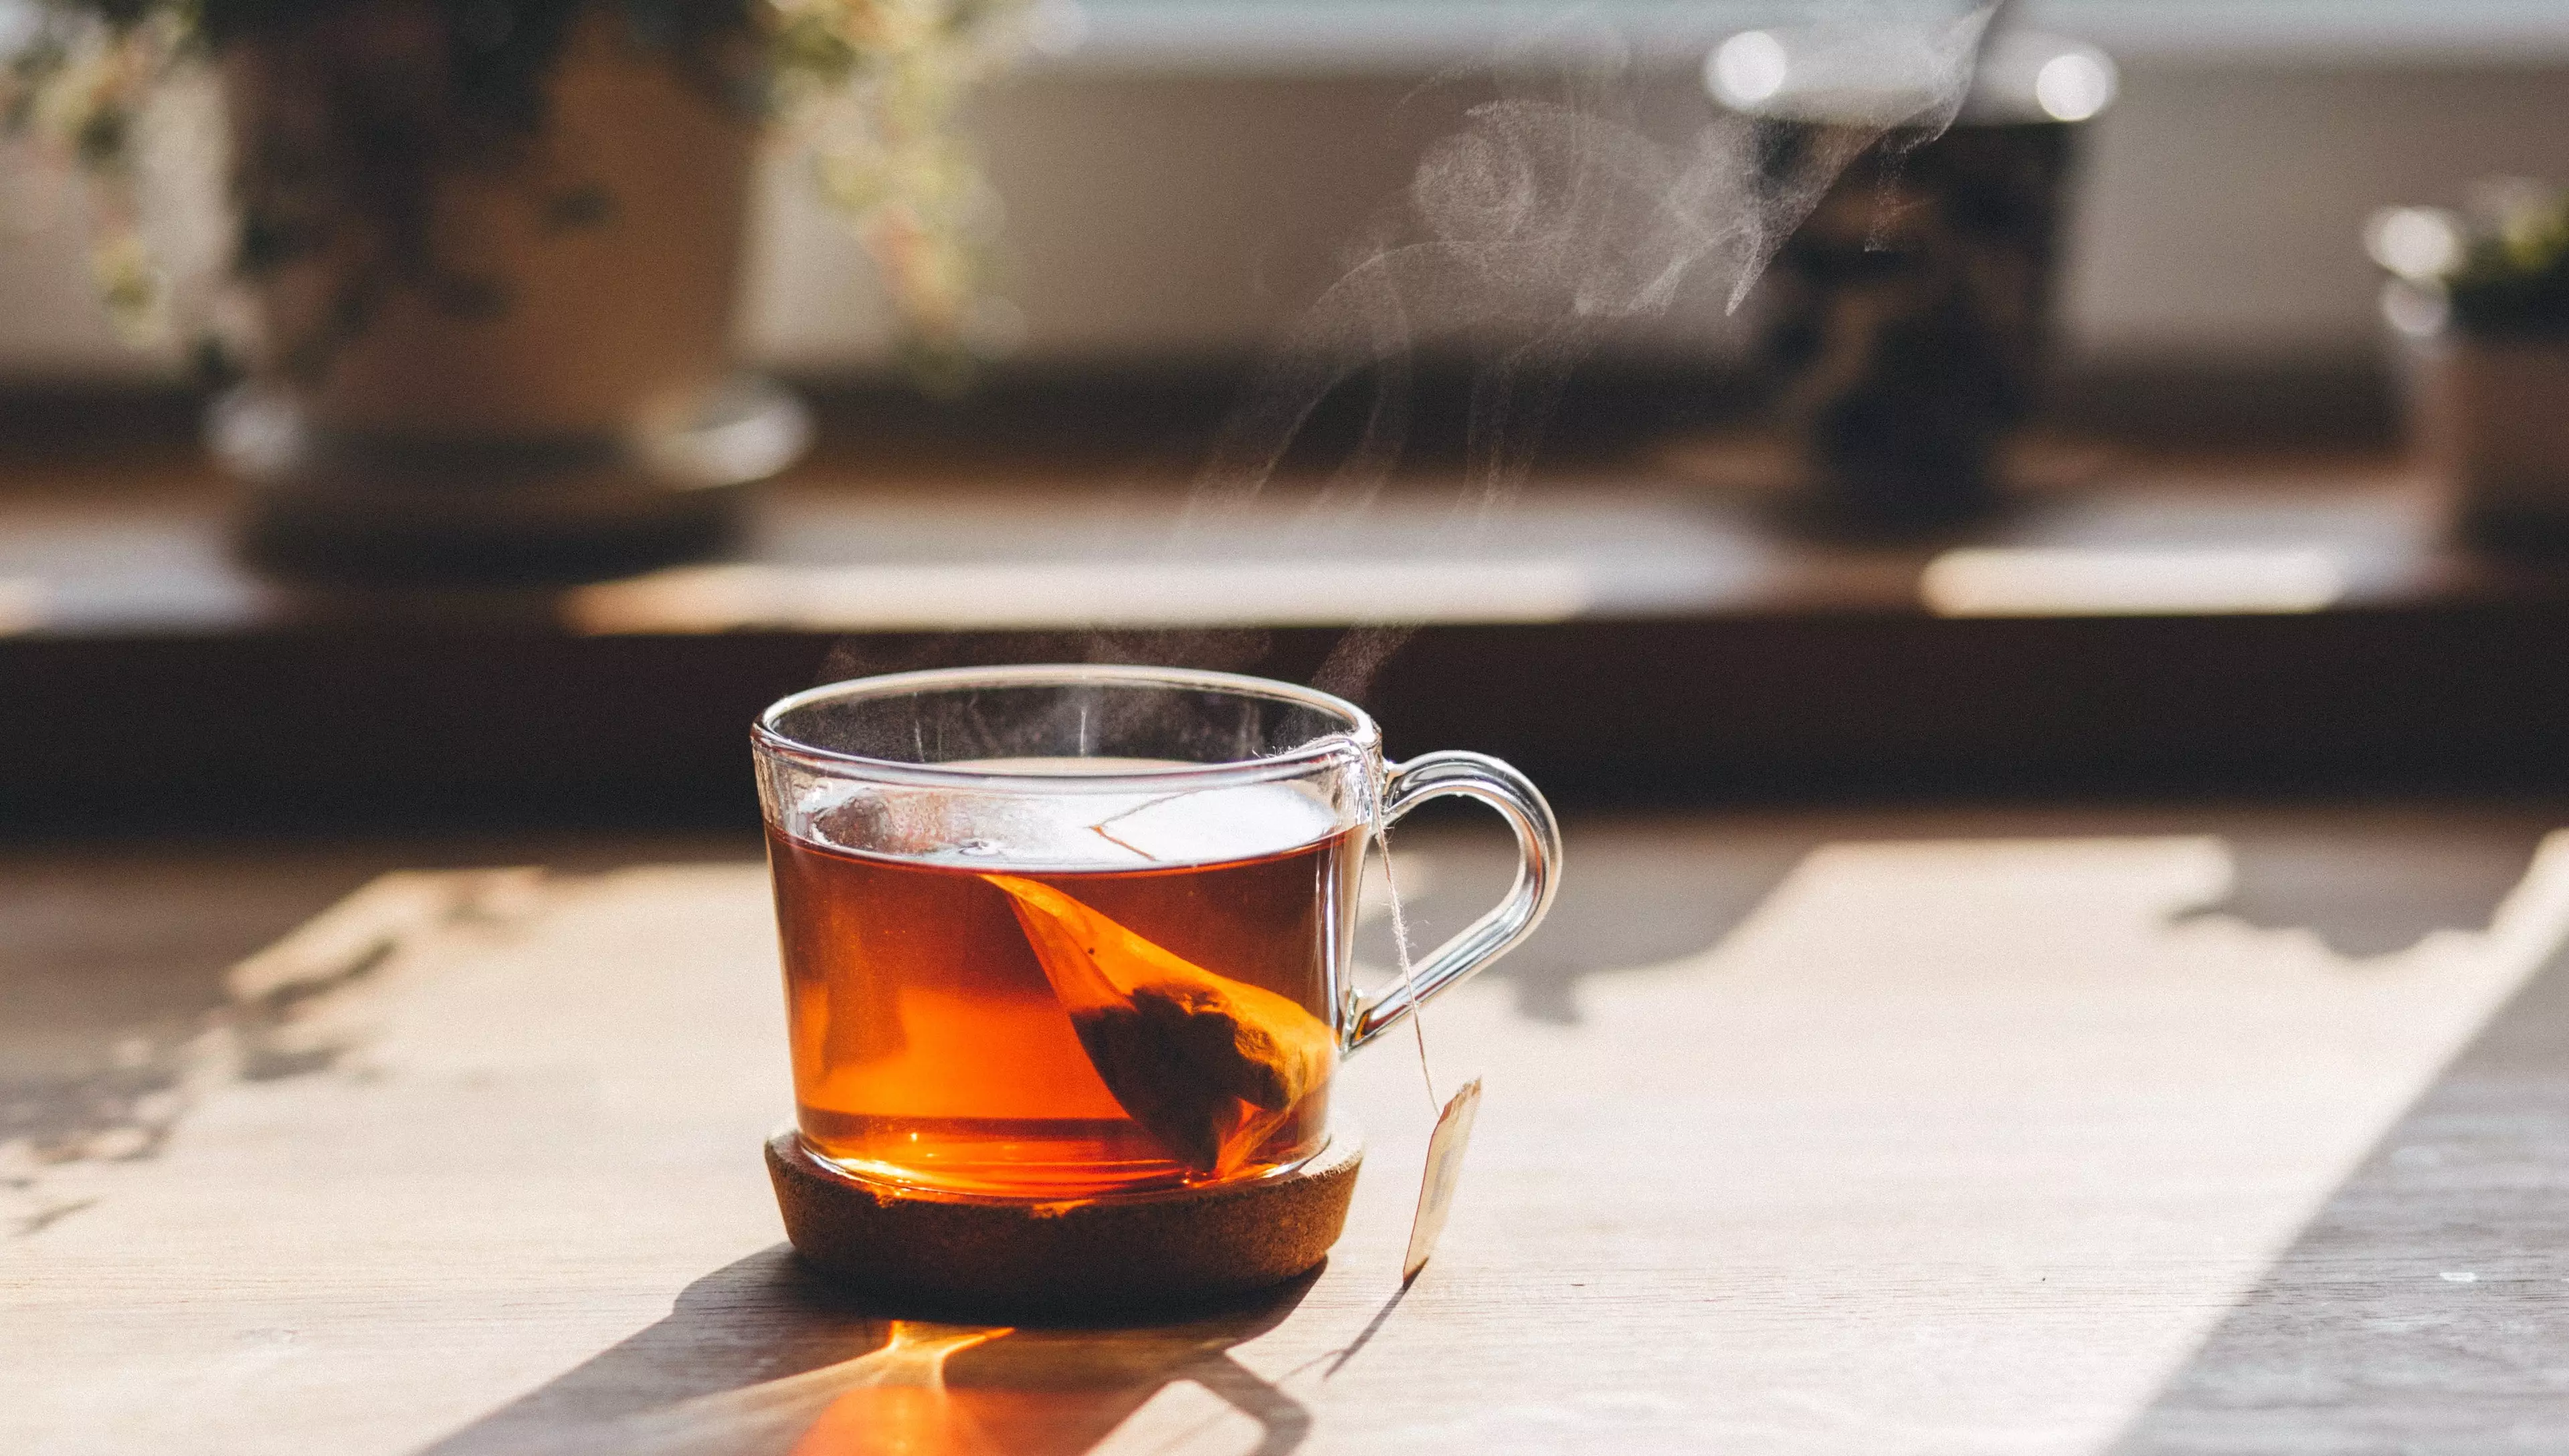 Green tea has the most proven health benefits (